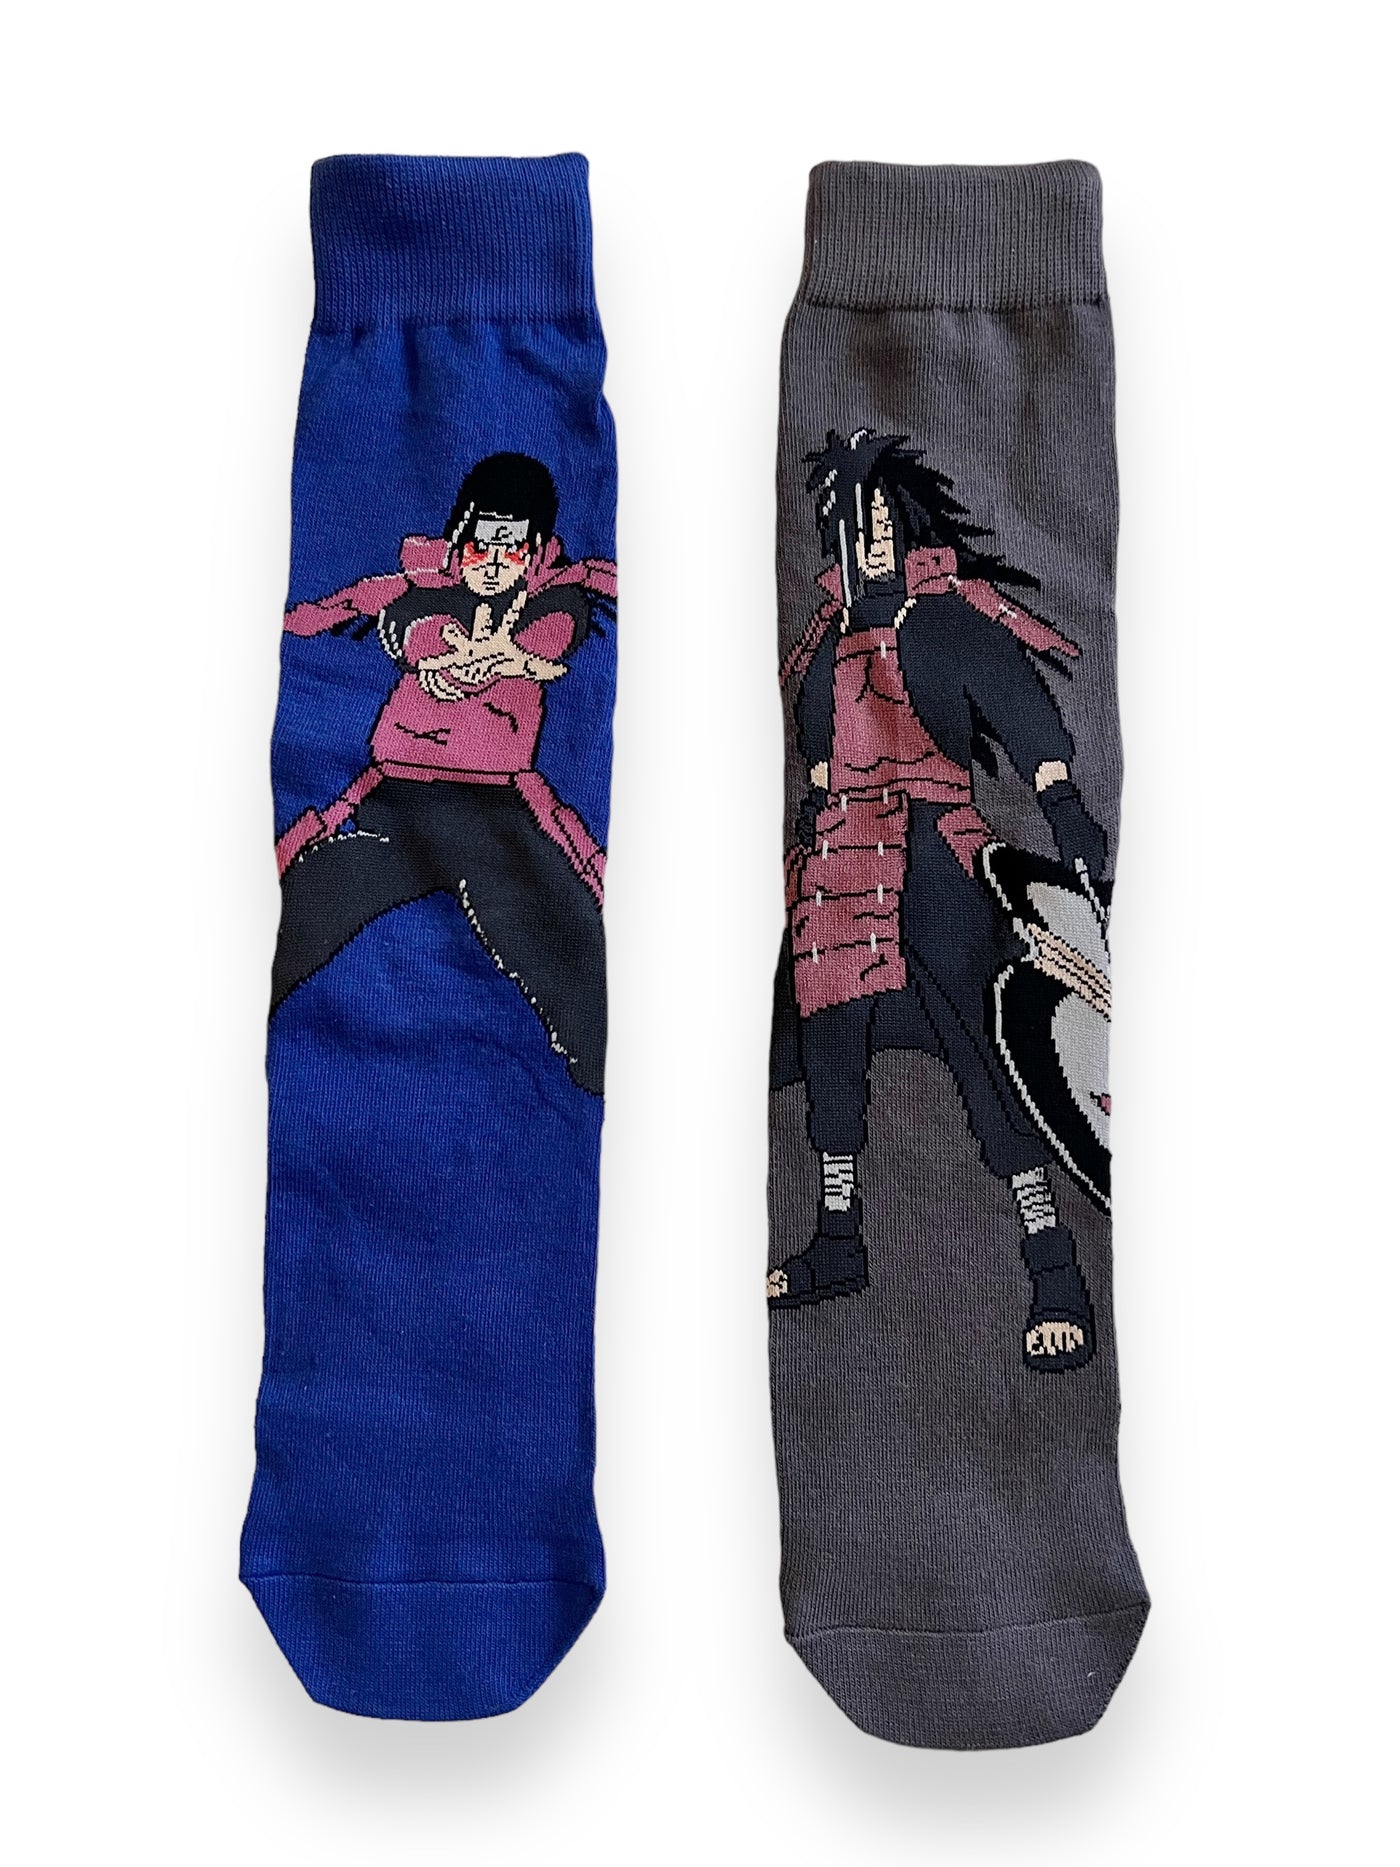 shinobi legends socks - PROBOXS